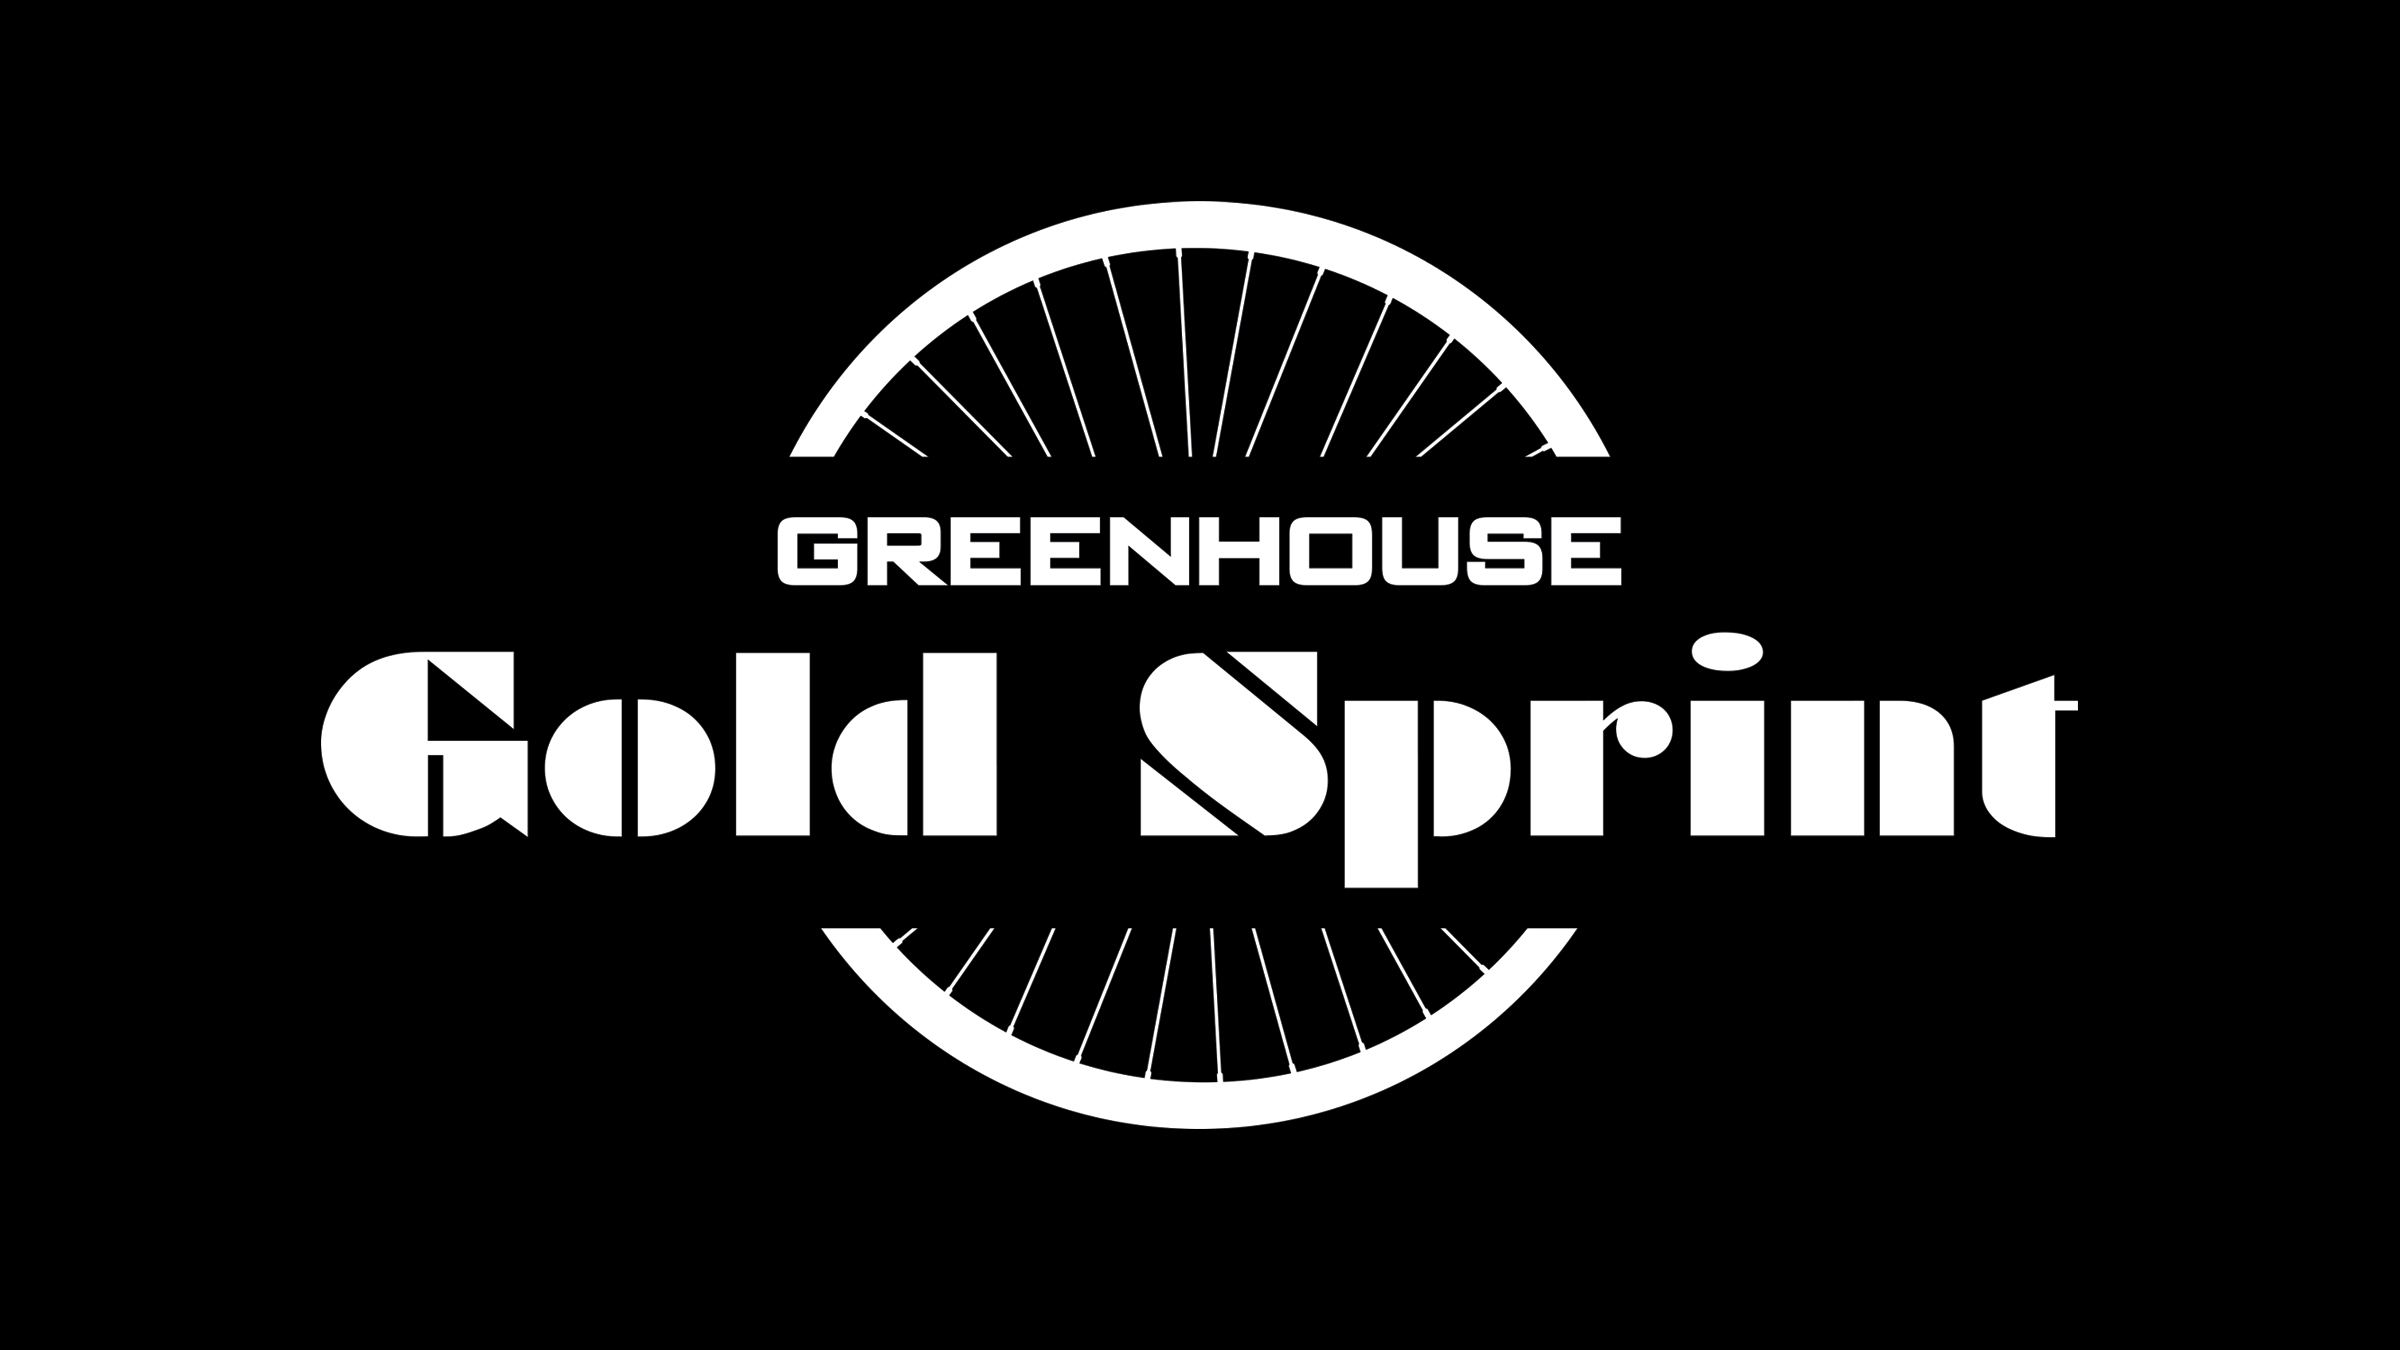 GREENHOUSE TRIEBHAUS Gold Sprint Logo schwarz